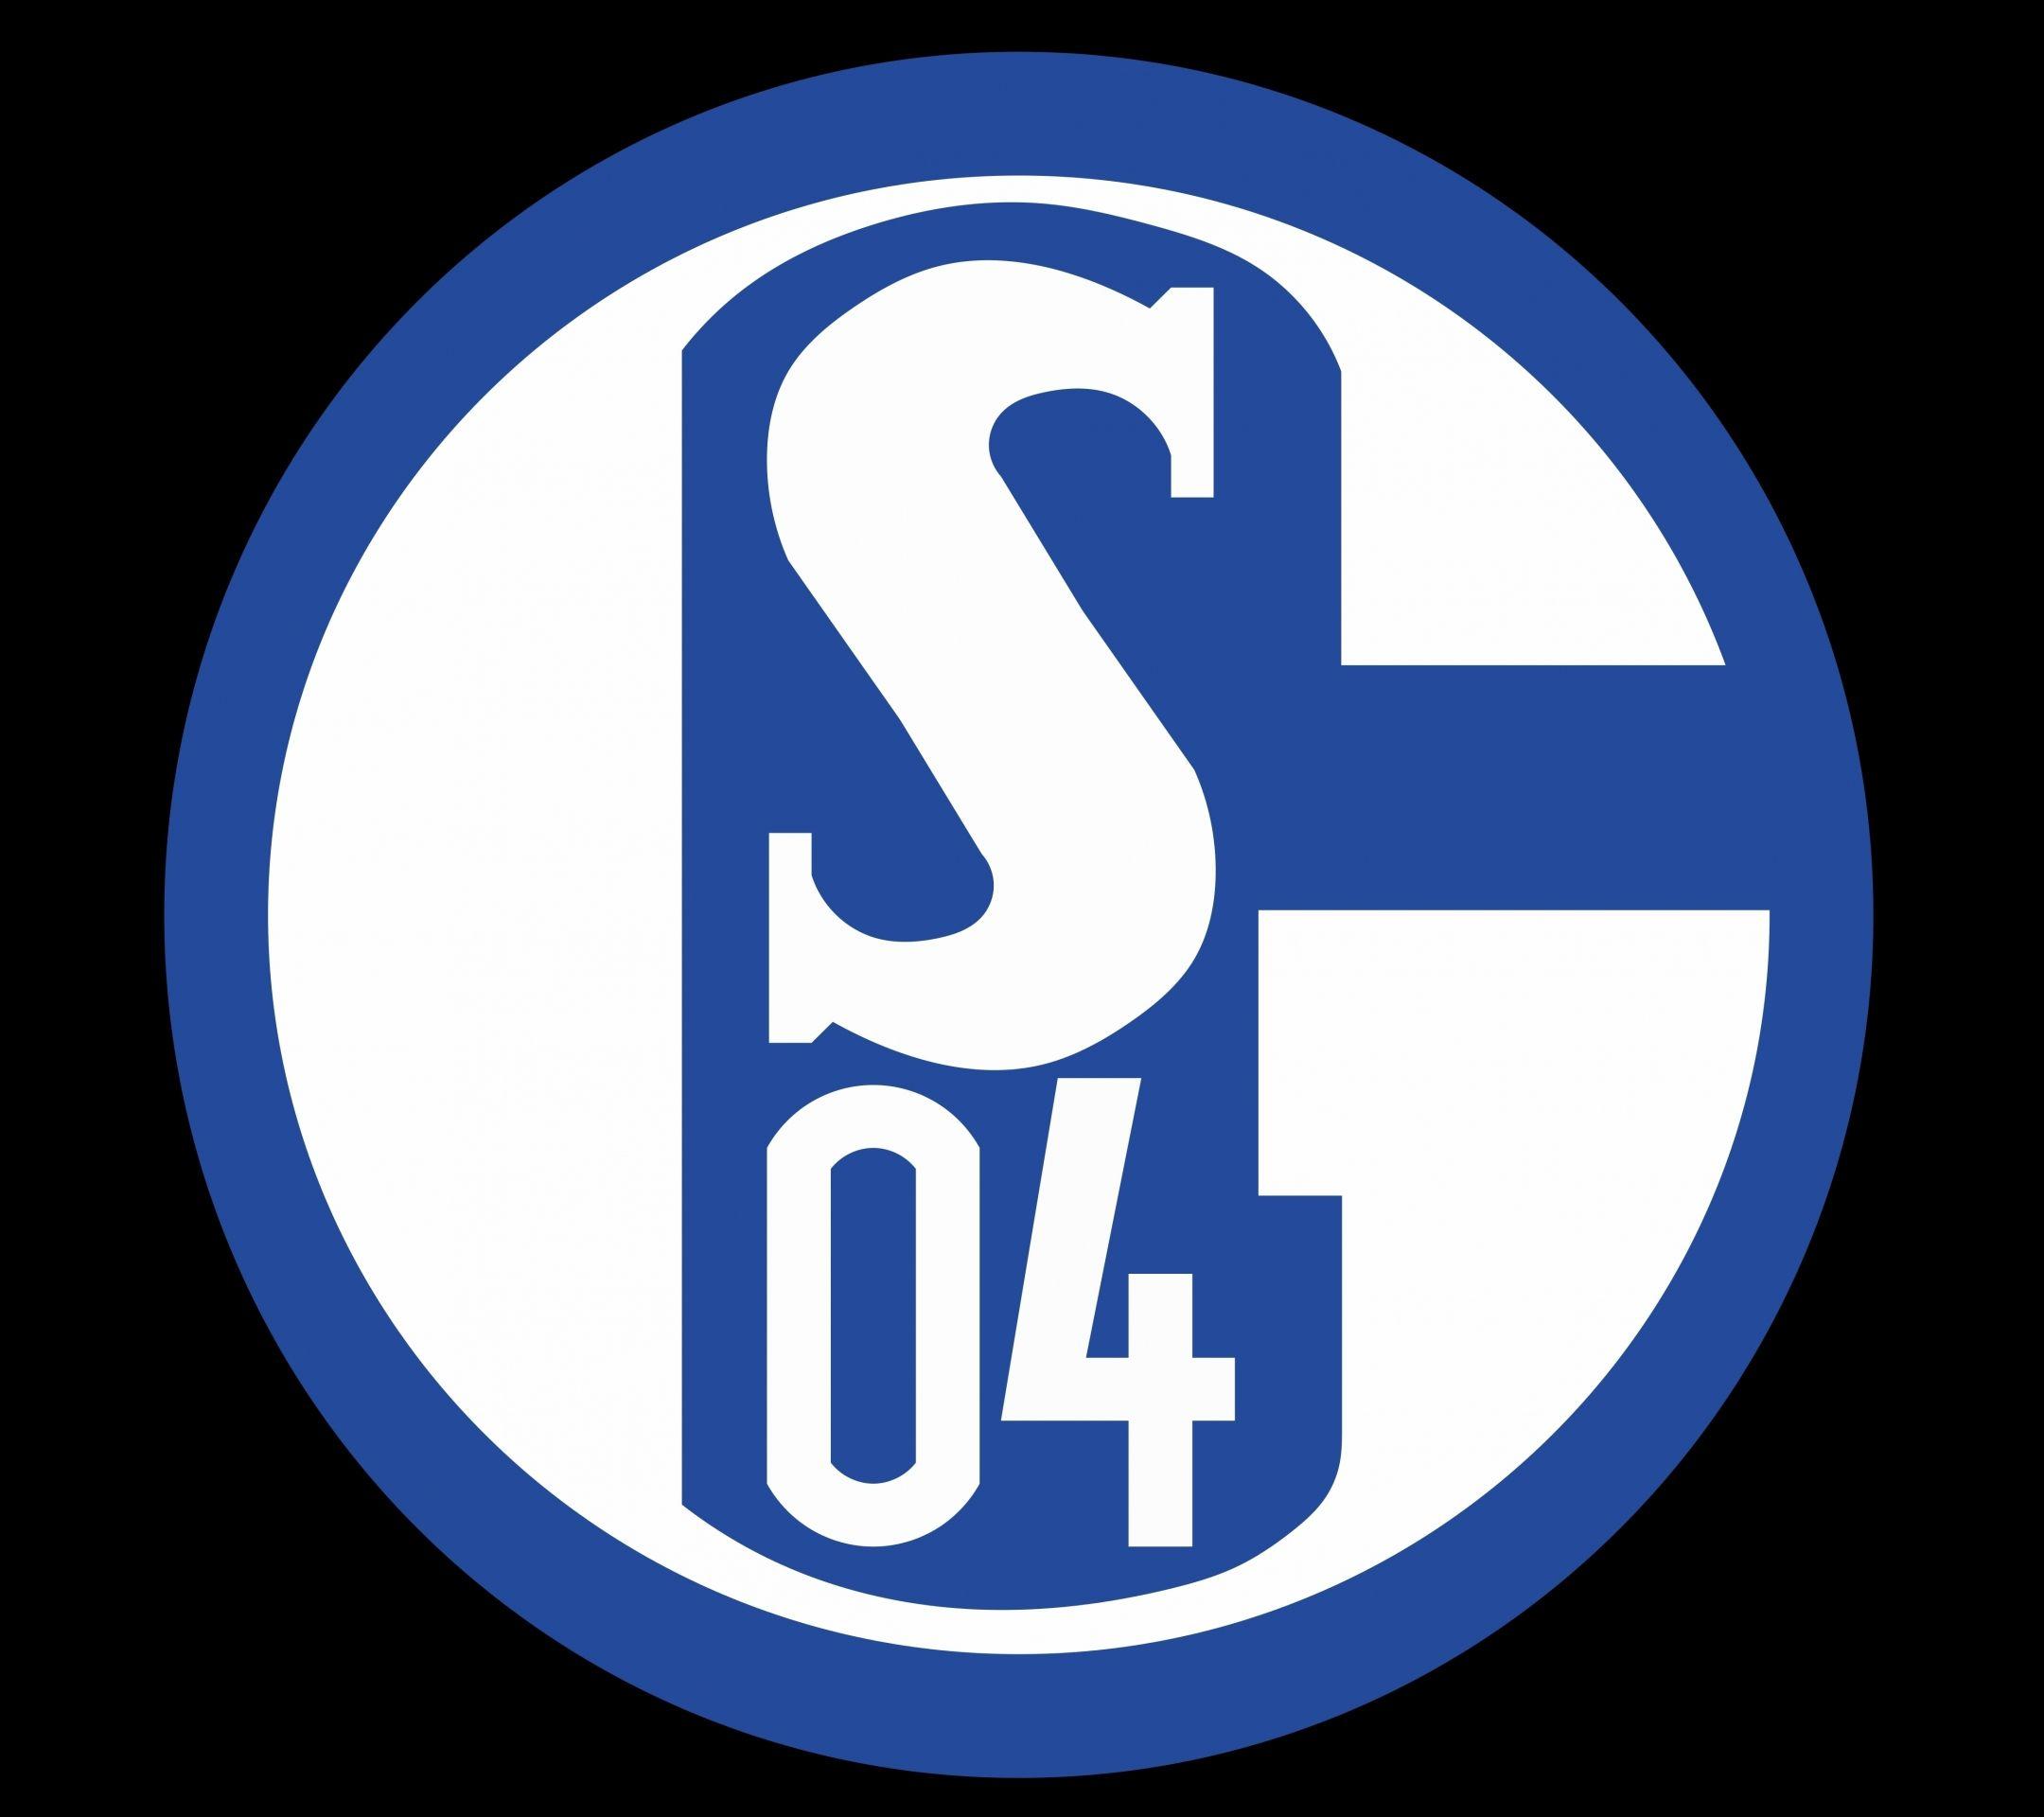 Sports FC Schalke 04